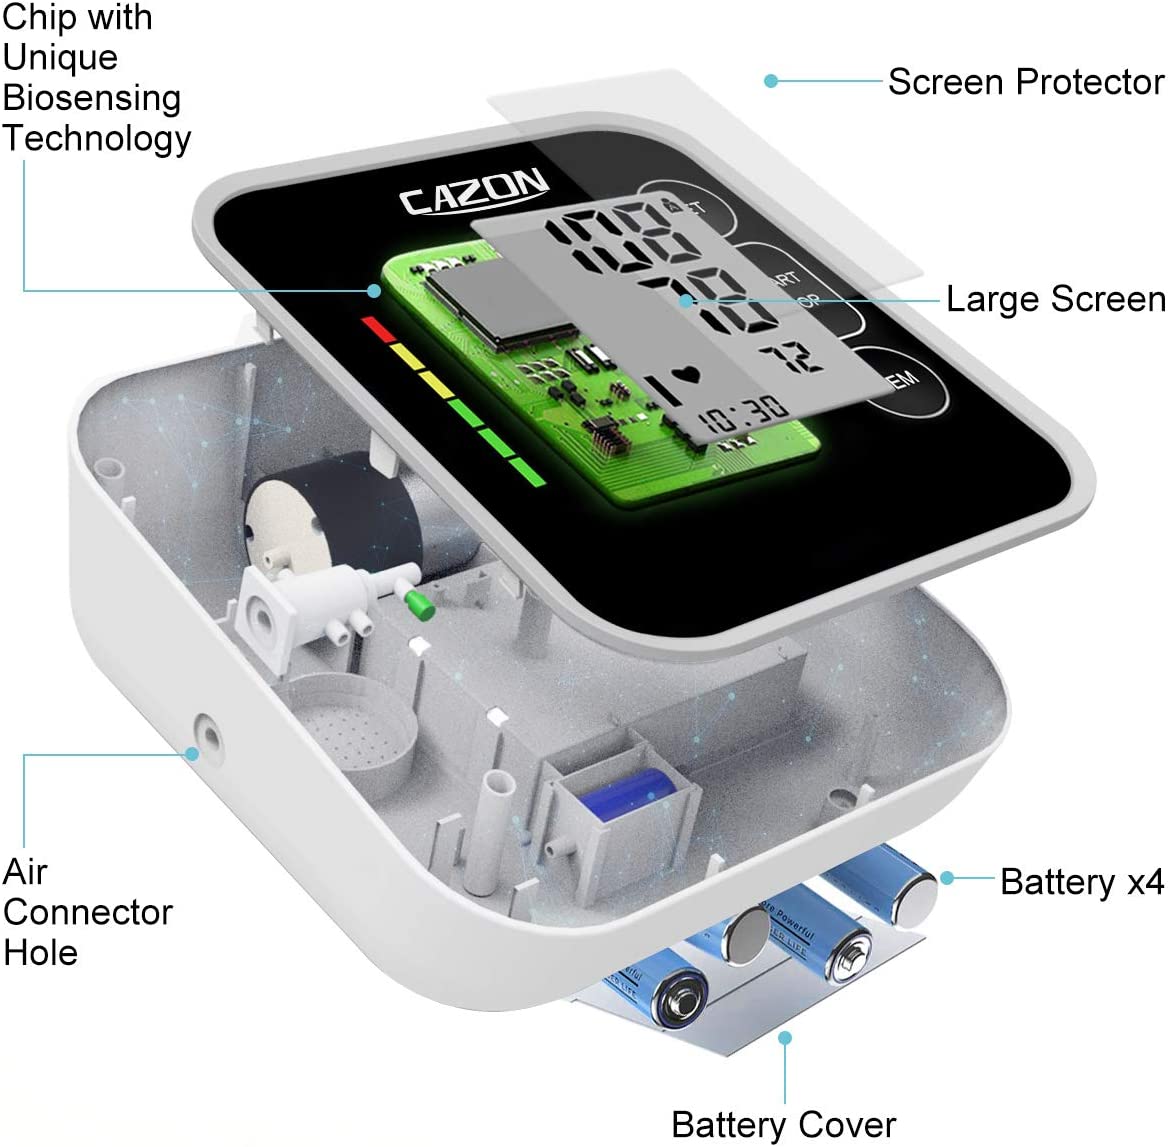 CAZON Blutdruckmessgeräte Oberarm Digital Vollautomatisch Blutdruckmessgerät Pulsmessung Blutdruckmessung Großes mit Große Manschette 2x120 Dual-User Schwarz